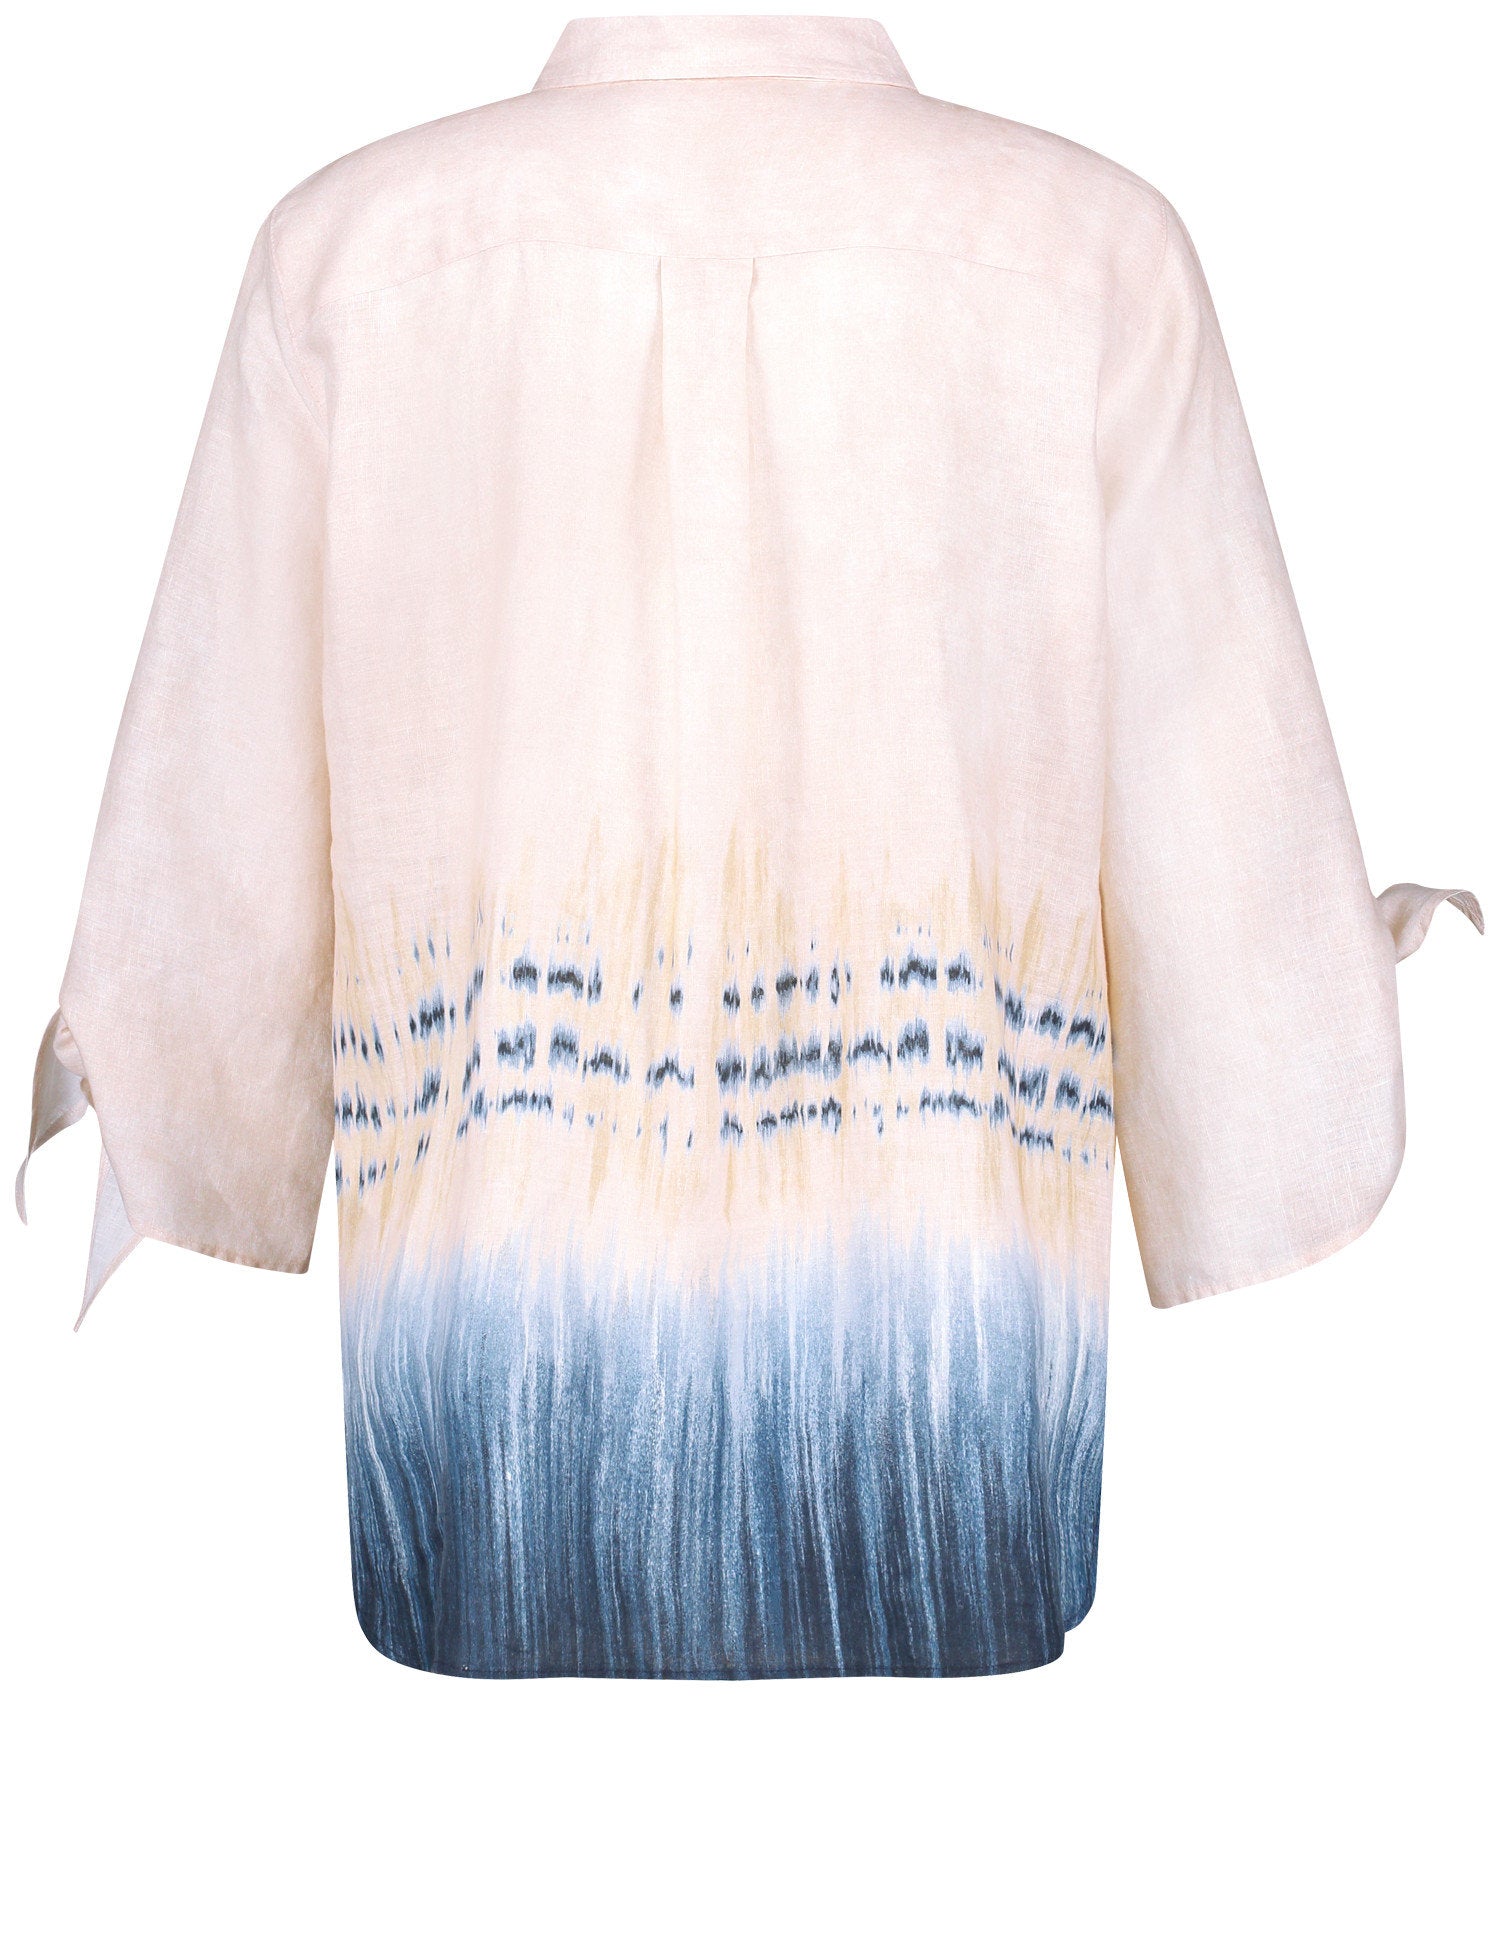 3/4-Sleeve Linen Blouse With Colour Graduation_360041-31437_3088_08